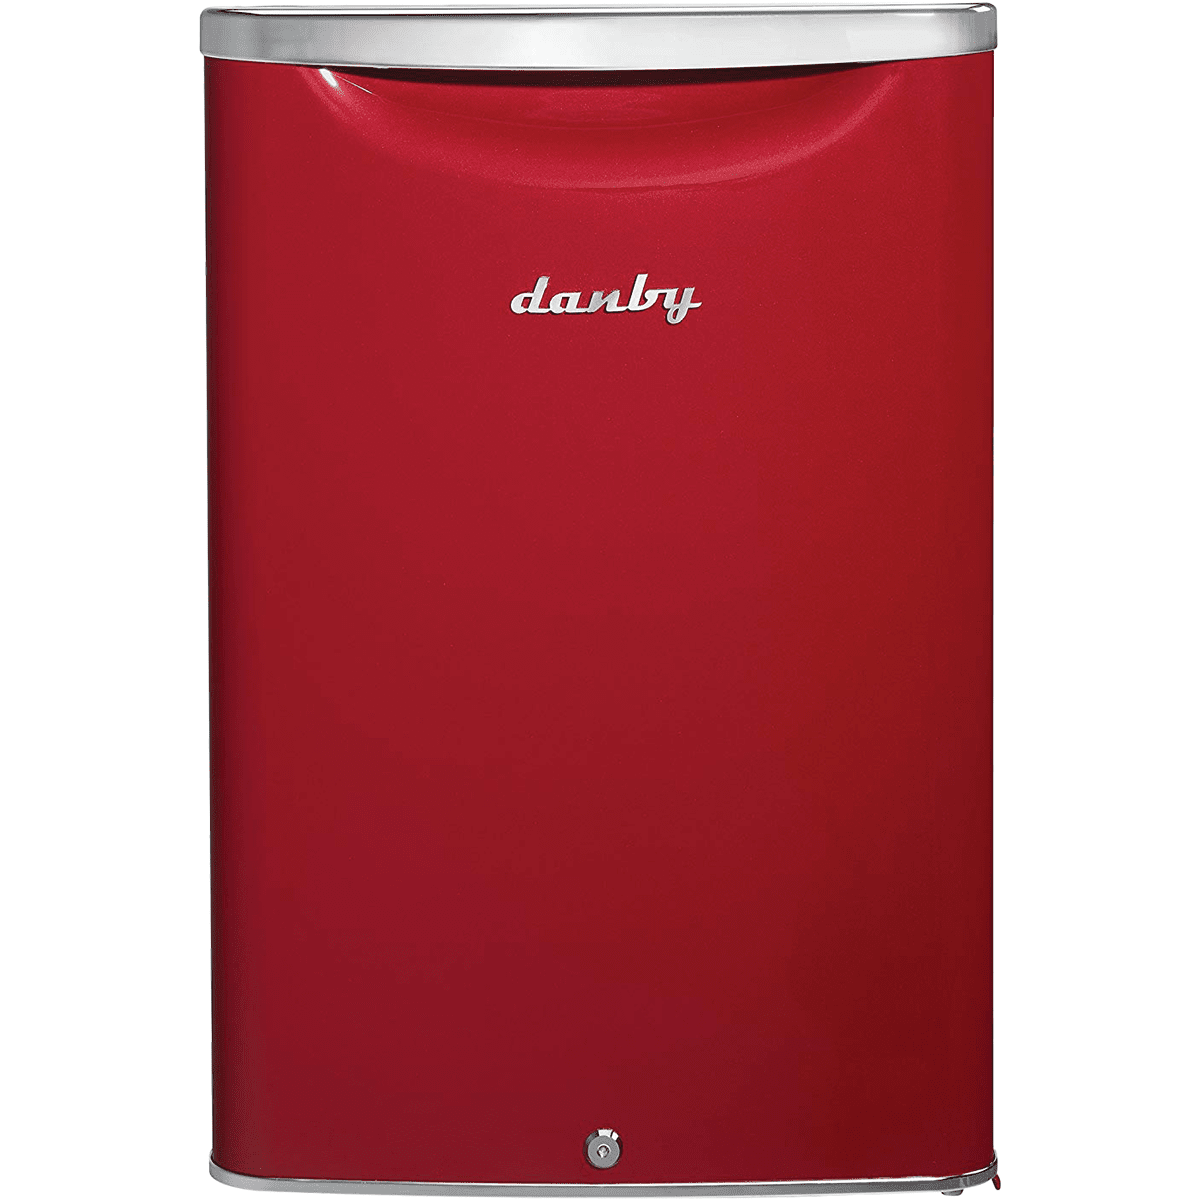 Danby Contemporary Classic 2.6 Cu. Ft. Energy Star Mini Refrigerator